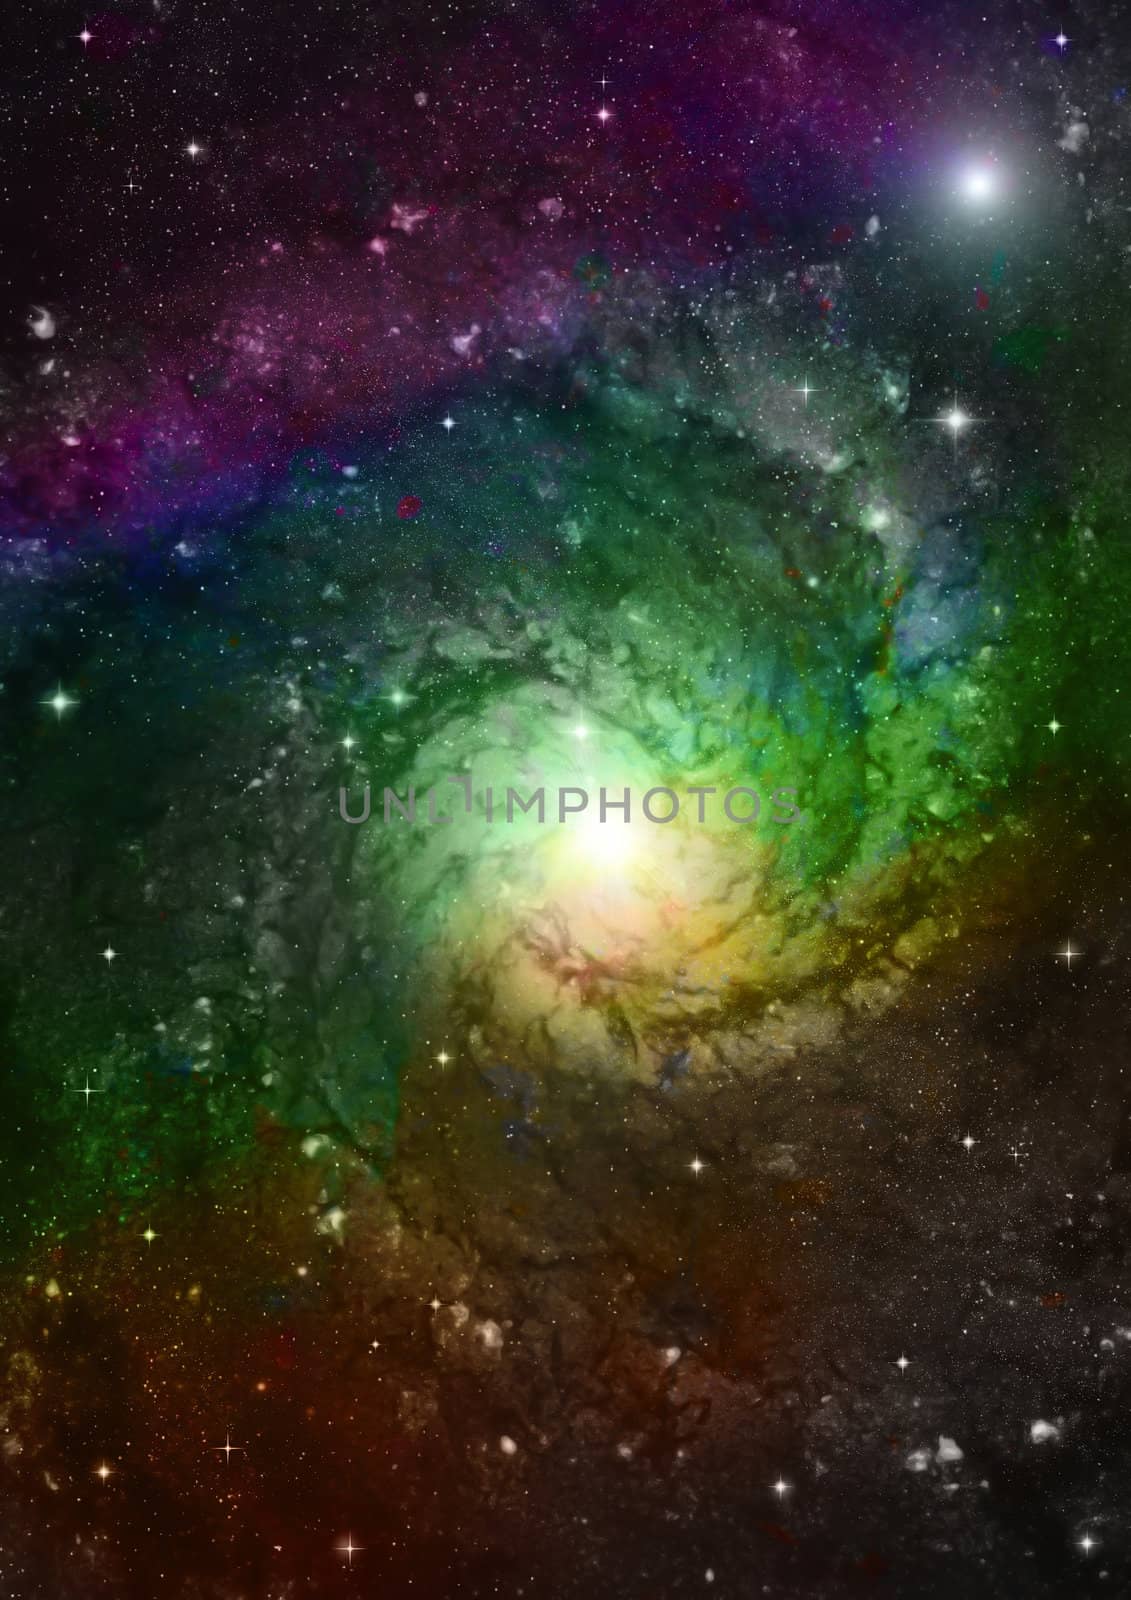 Far away spiral galaxy by richter1910